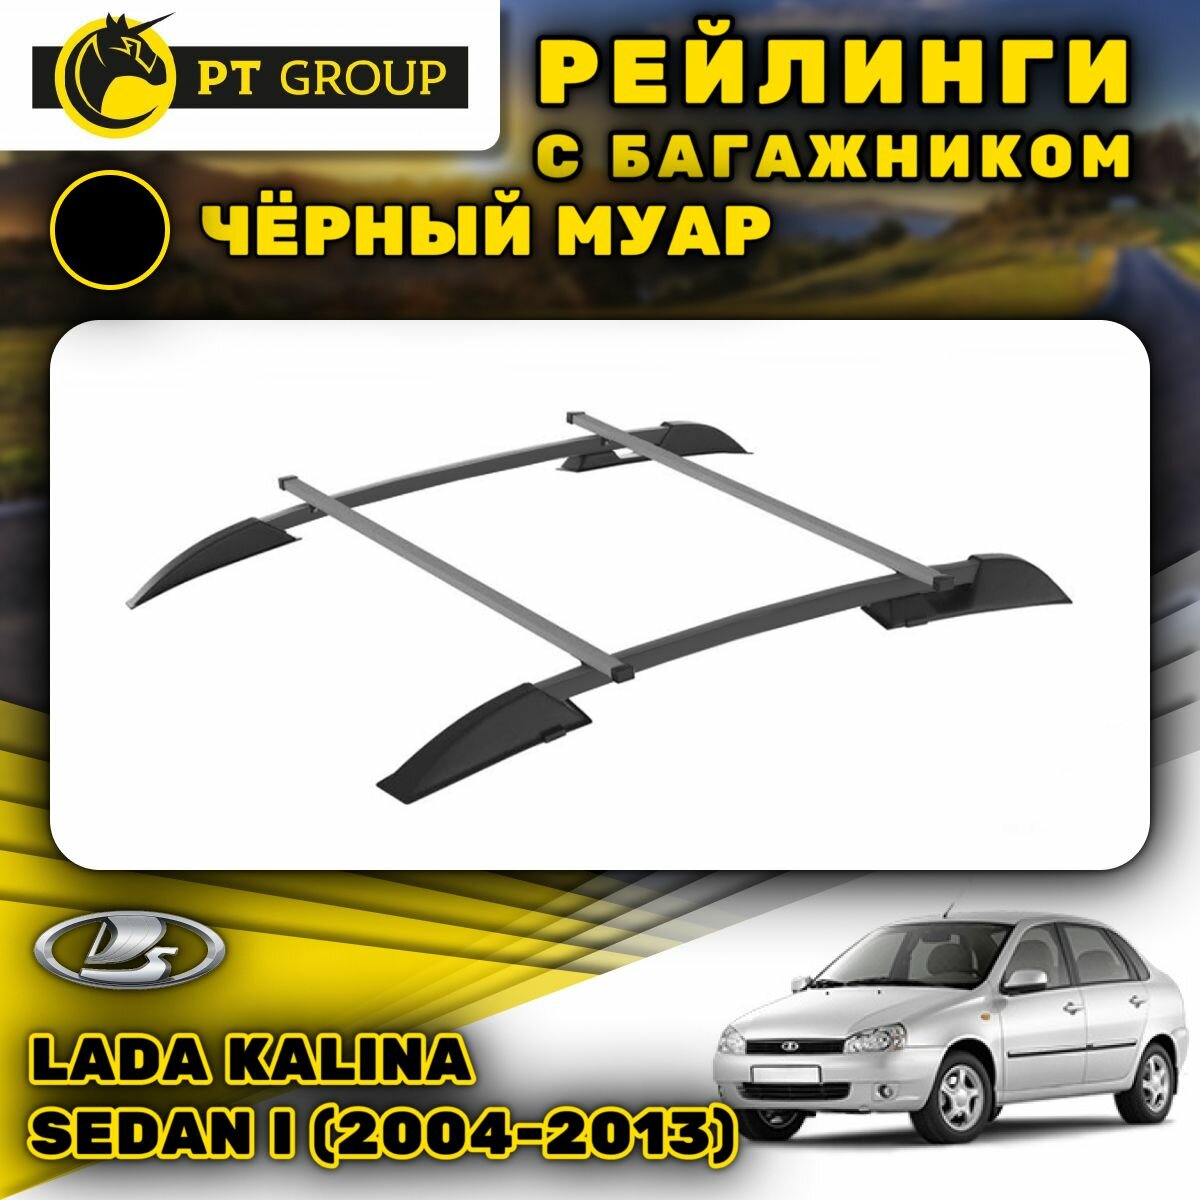 Рейлинги ПТ Групп "Усиленный" для Lada Kalina Sedan I (2004-2013) (Лада Калина) черный муар LGR551504 (комплект 2 рейлинга + 2 поперечины)